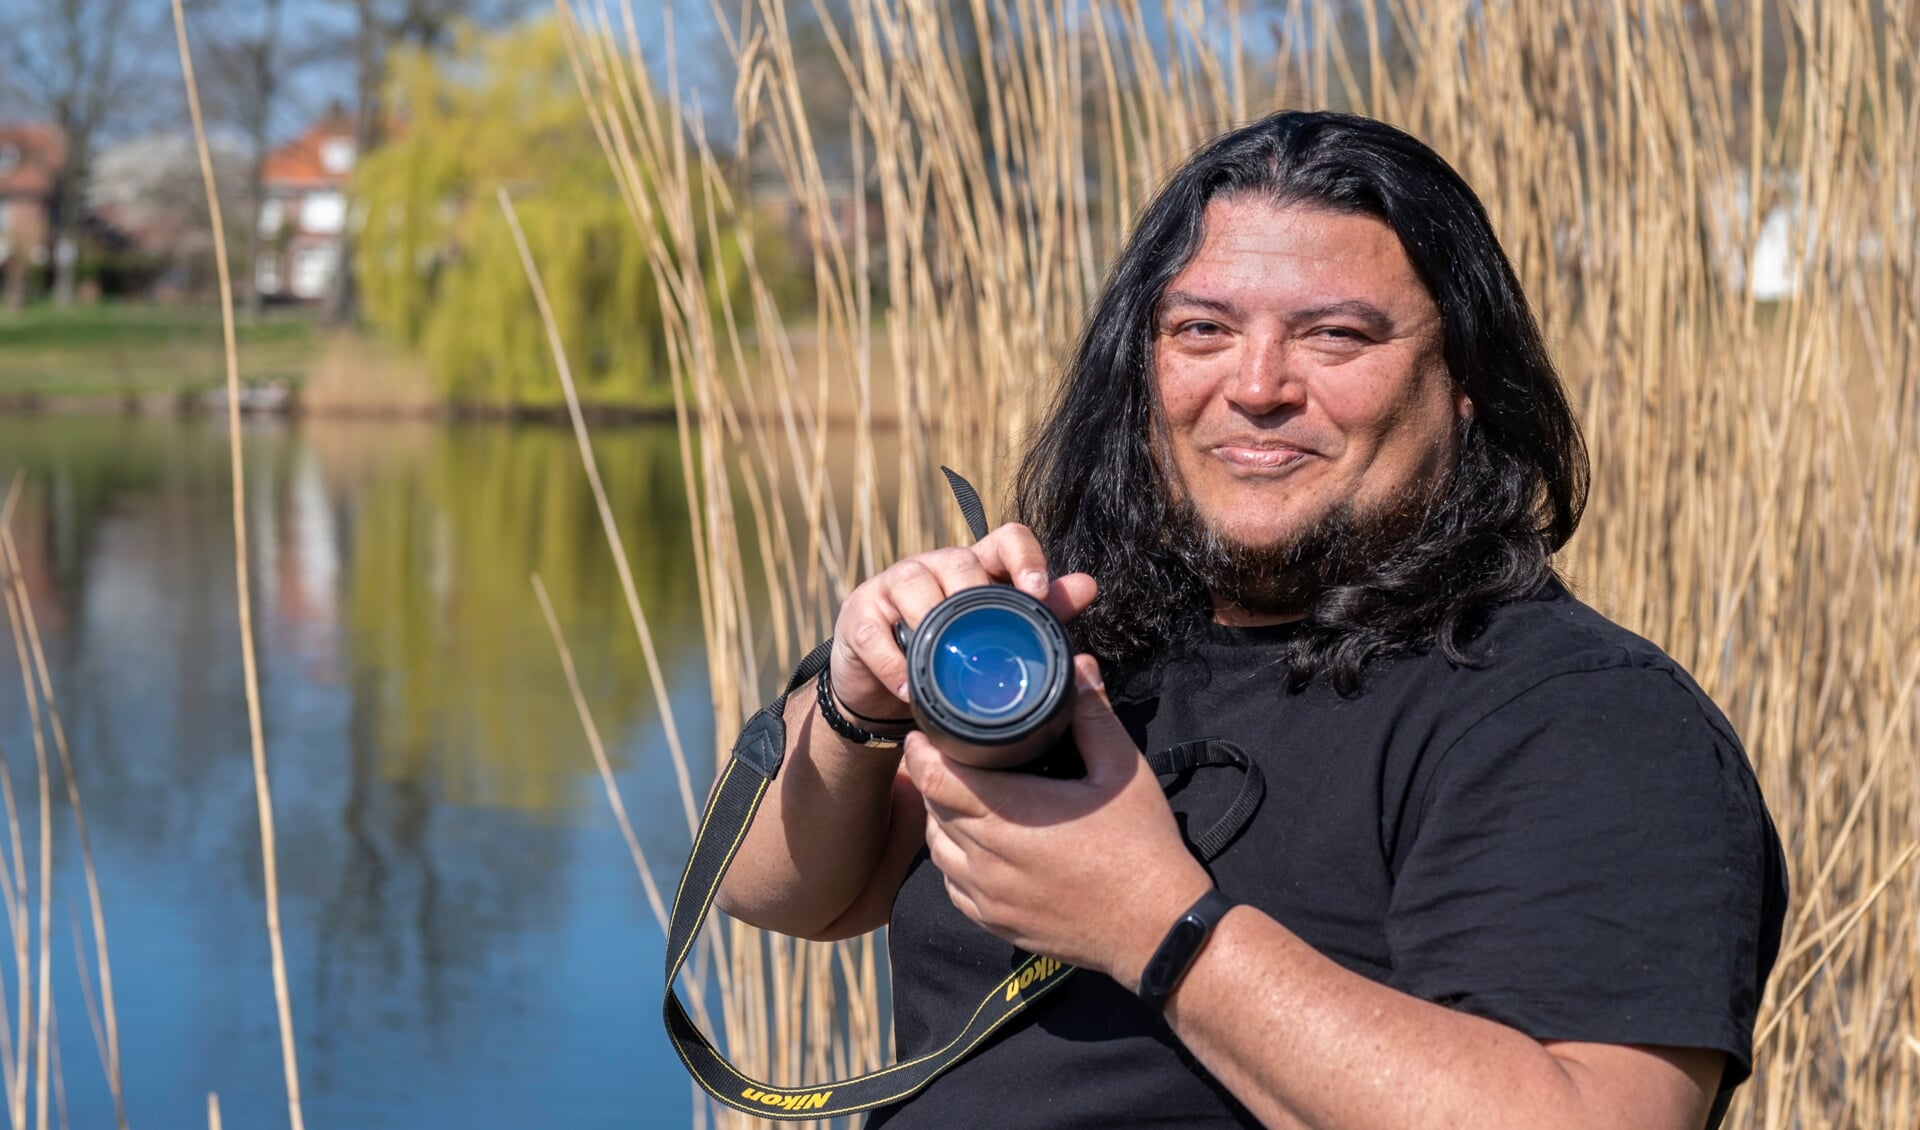 Jimmy Suarez uit Den Bosch is al een jaar actief voor Quiet als vrijwilliger. Hij kan zijn ei kwijt in het grafische werk en de fotografie, want daar ligt toch wel echt zijn passie. 